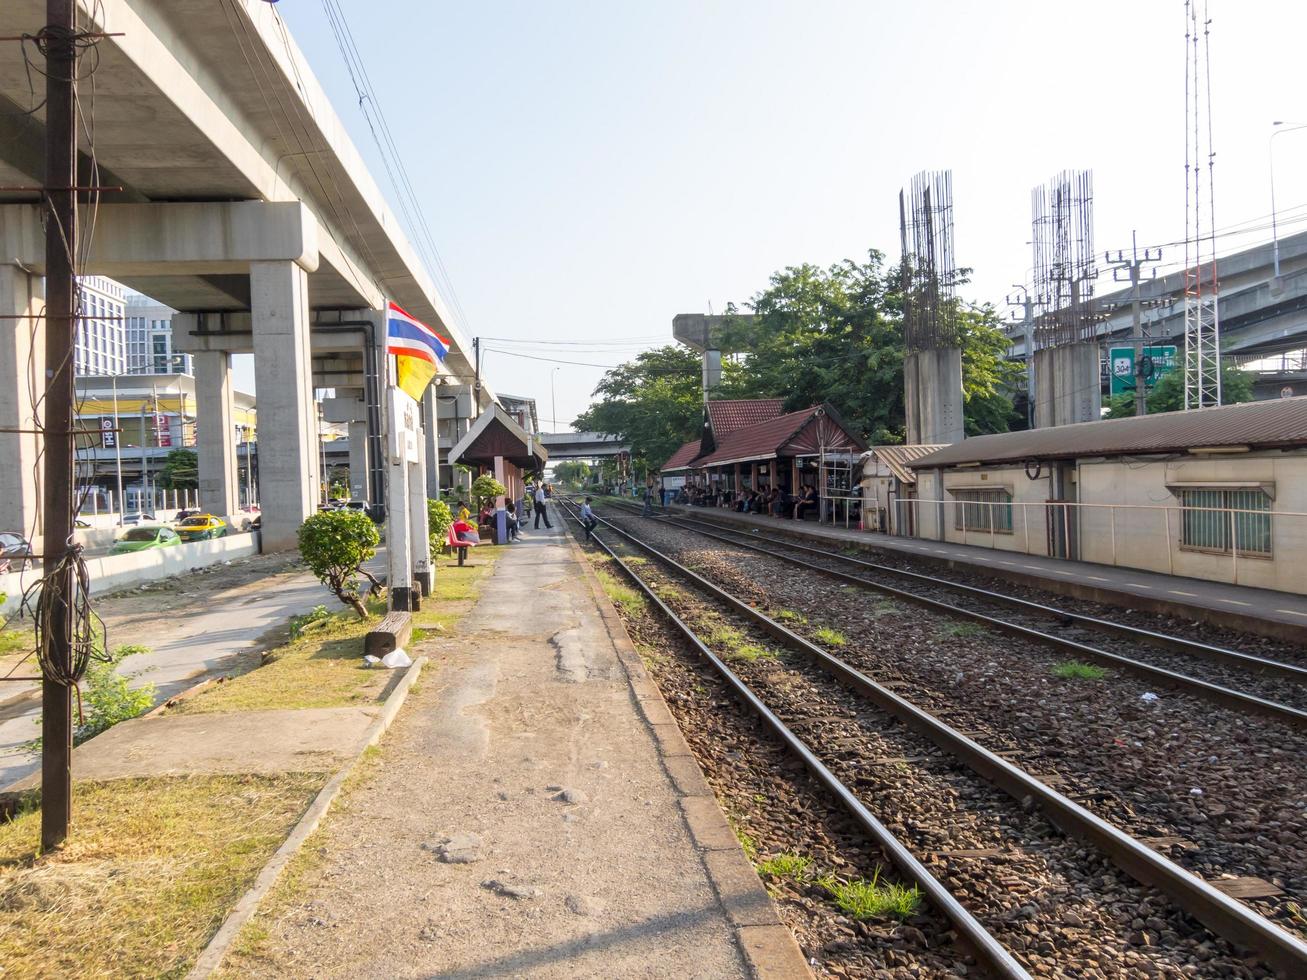 srt mörkröd linjeelektrisk tåg och järnväg bangkokthailand28 september 2018båda sträckorna är parallella med rangsit den 28 september 2018 i thailand. foto